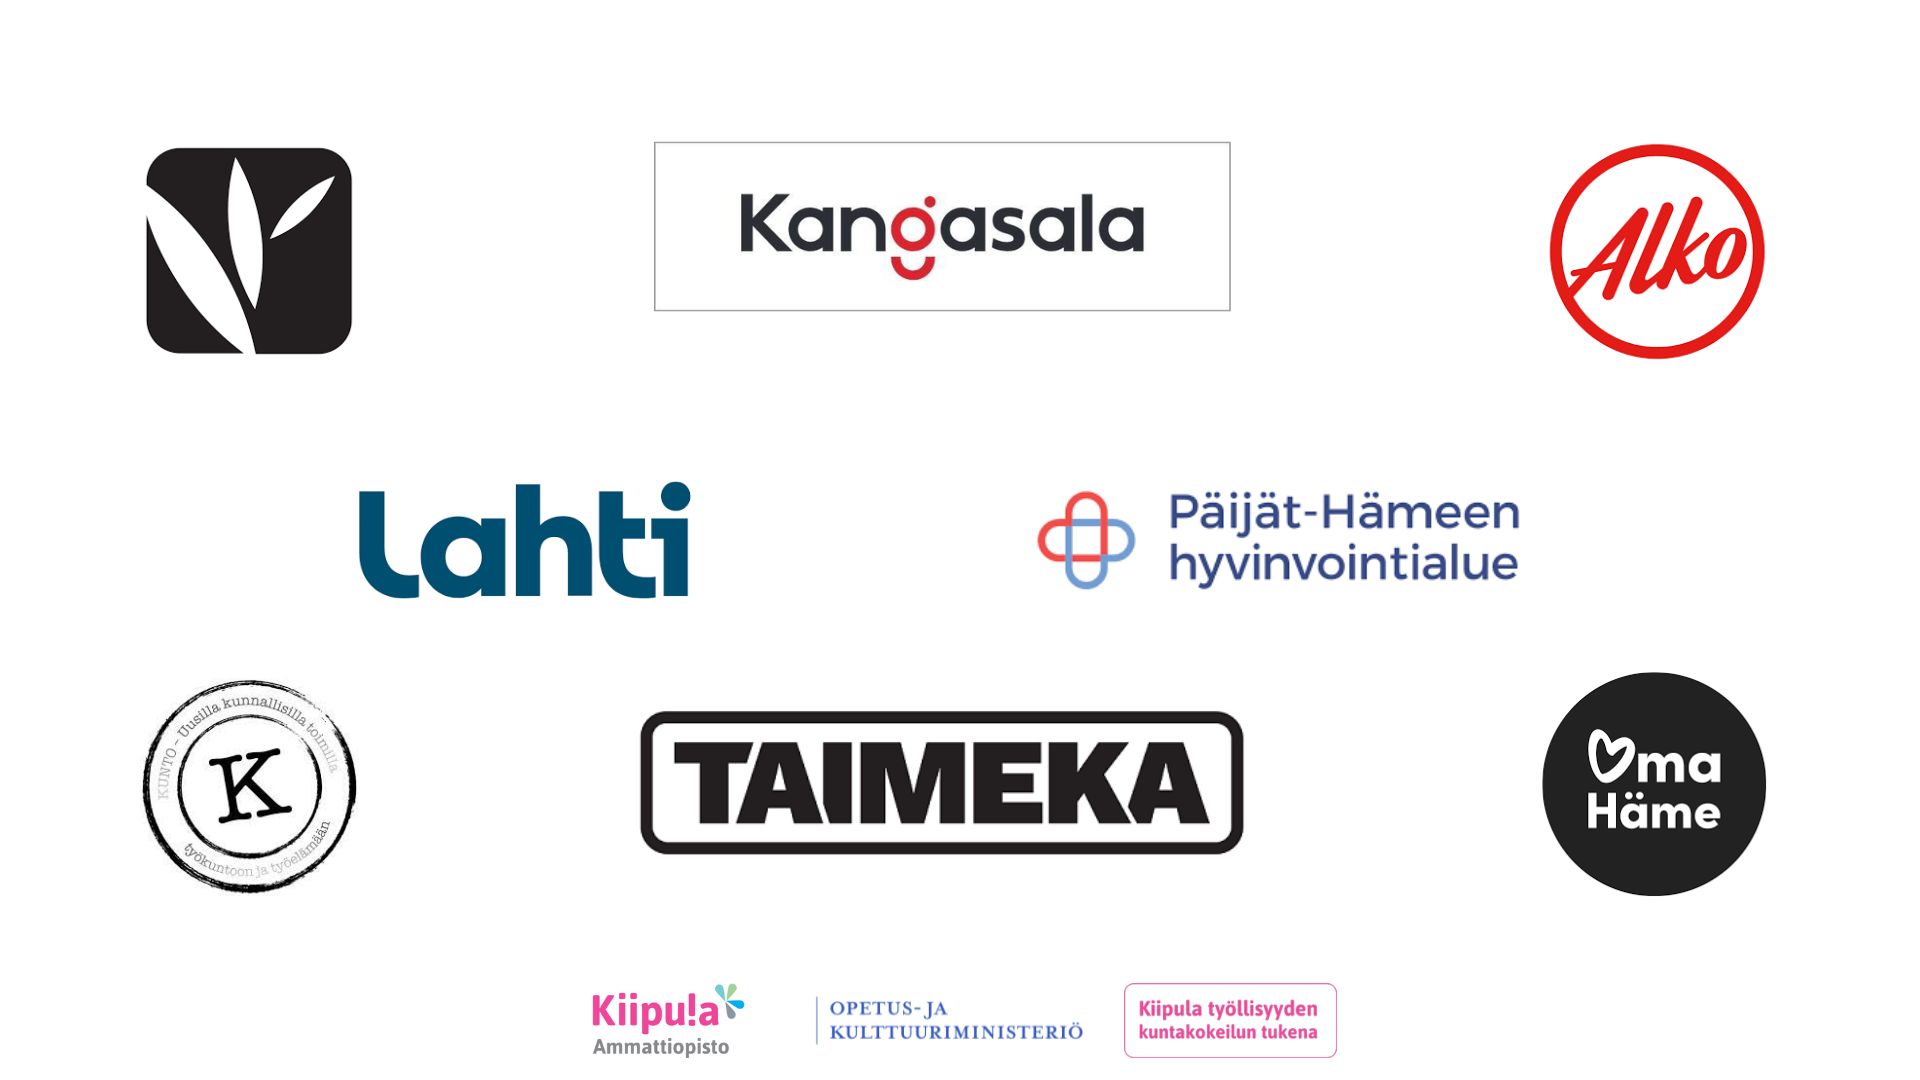 Kuvassa näkyy webinaarissa esiintyvien yritysten logot. Mukana ovat Karhuryhmän päiväkodit, Kangasala, Alko, Lahti, Päijät-Hämeen hyvinvointialue, Kunto-hanke, Taimeka, Kanta-Hämeen hyvinvointialue ja Kiipula.